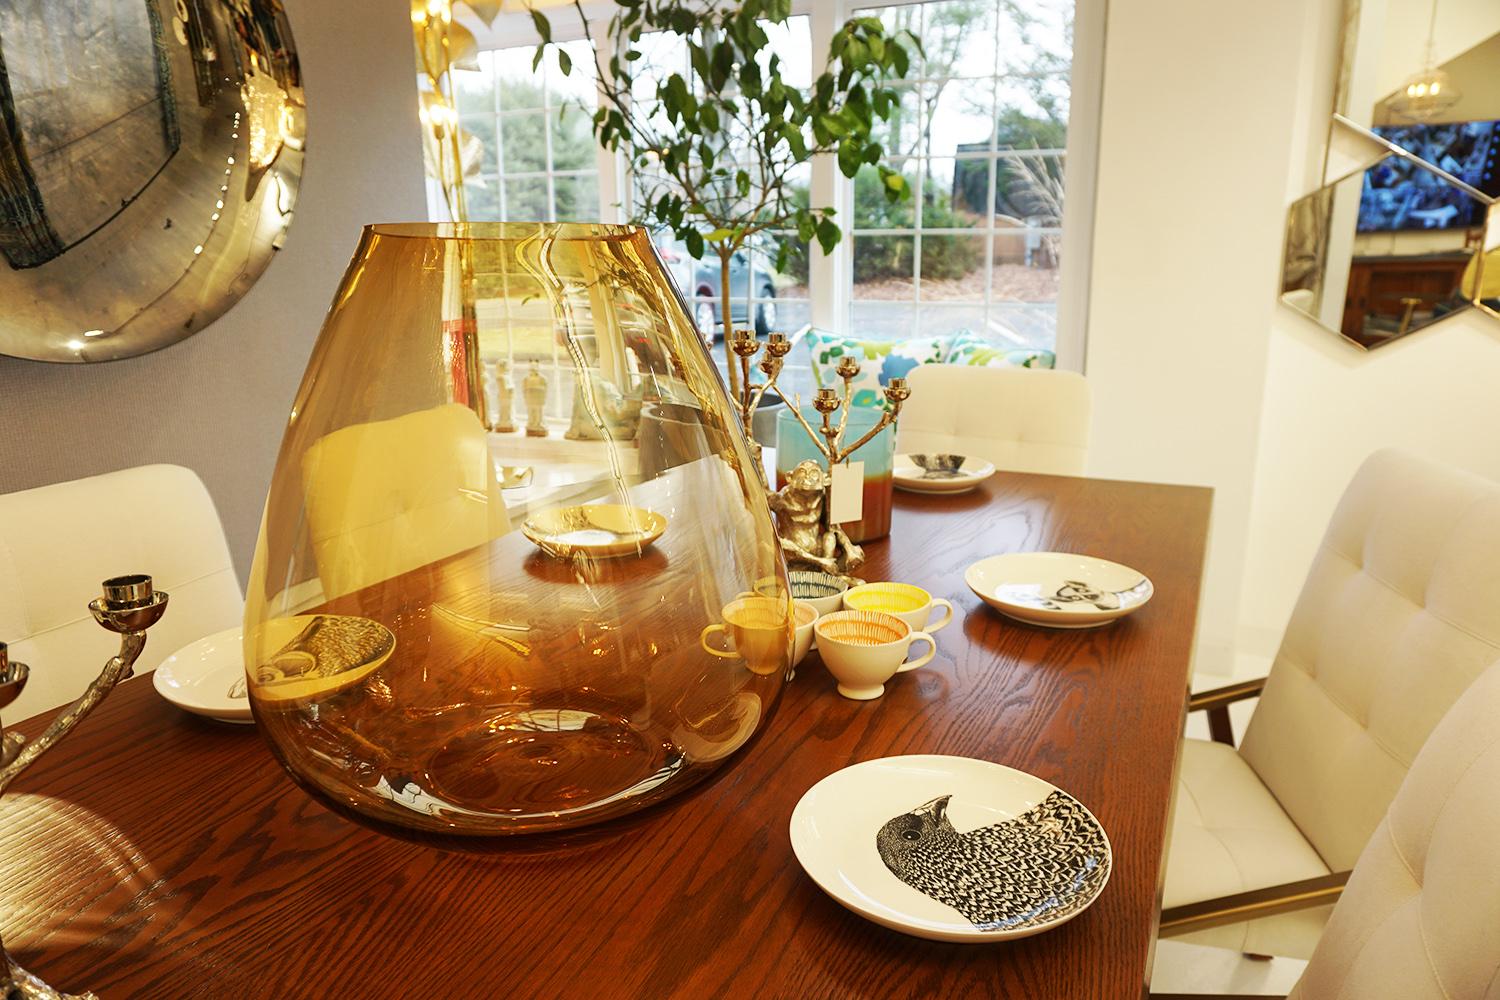 Qu'il soit utilisé comme un superbe récipient pour les fleurs ou comme un élégant centre de table décoratif, le vase Amber Whiskey ajoute un visuel agréable et magnifique à l'espace. Le vase est en verre avec une teinte ambrée qui est calme et